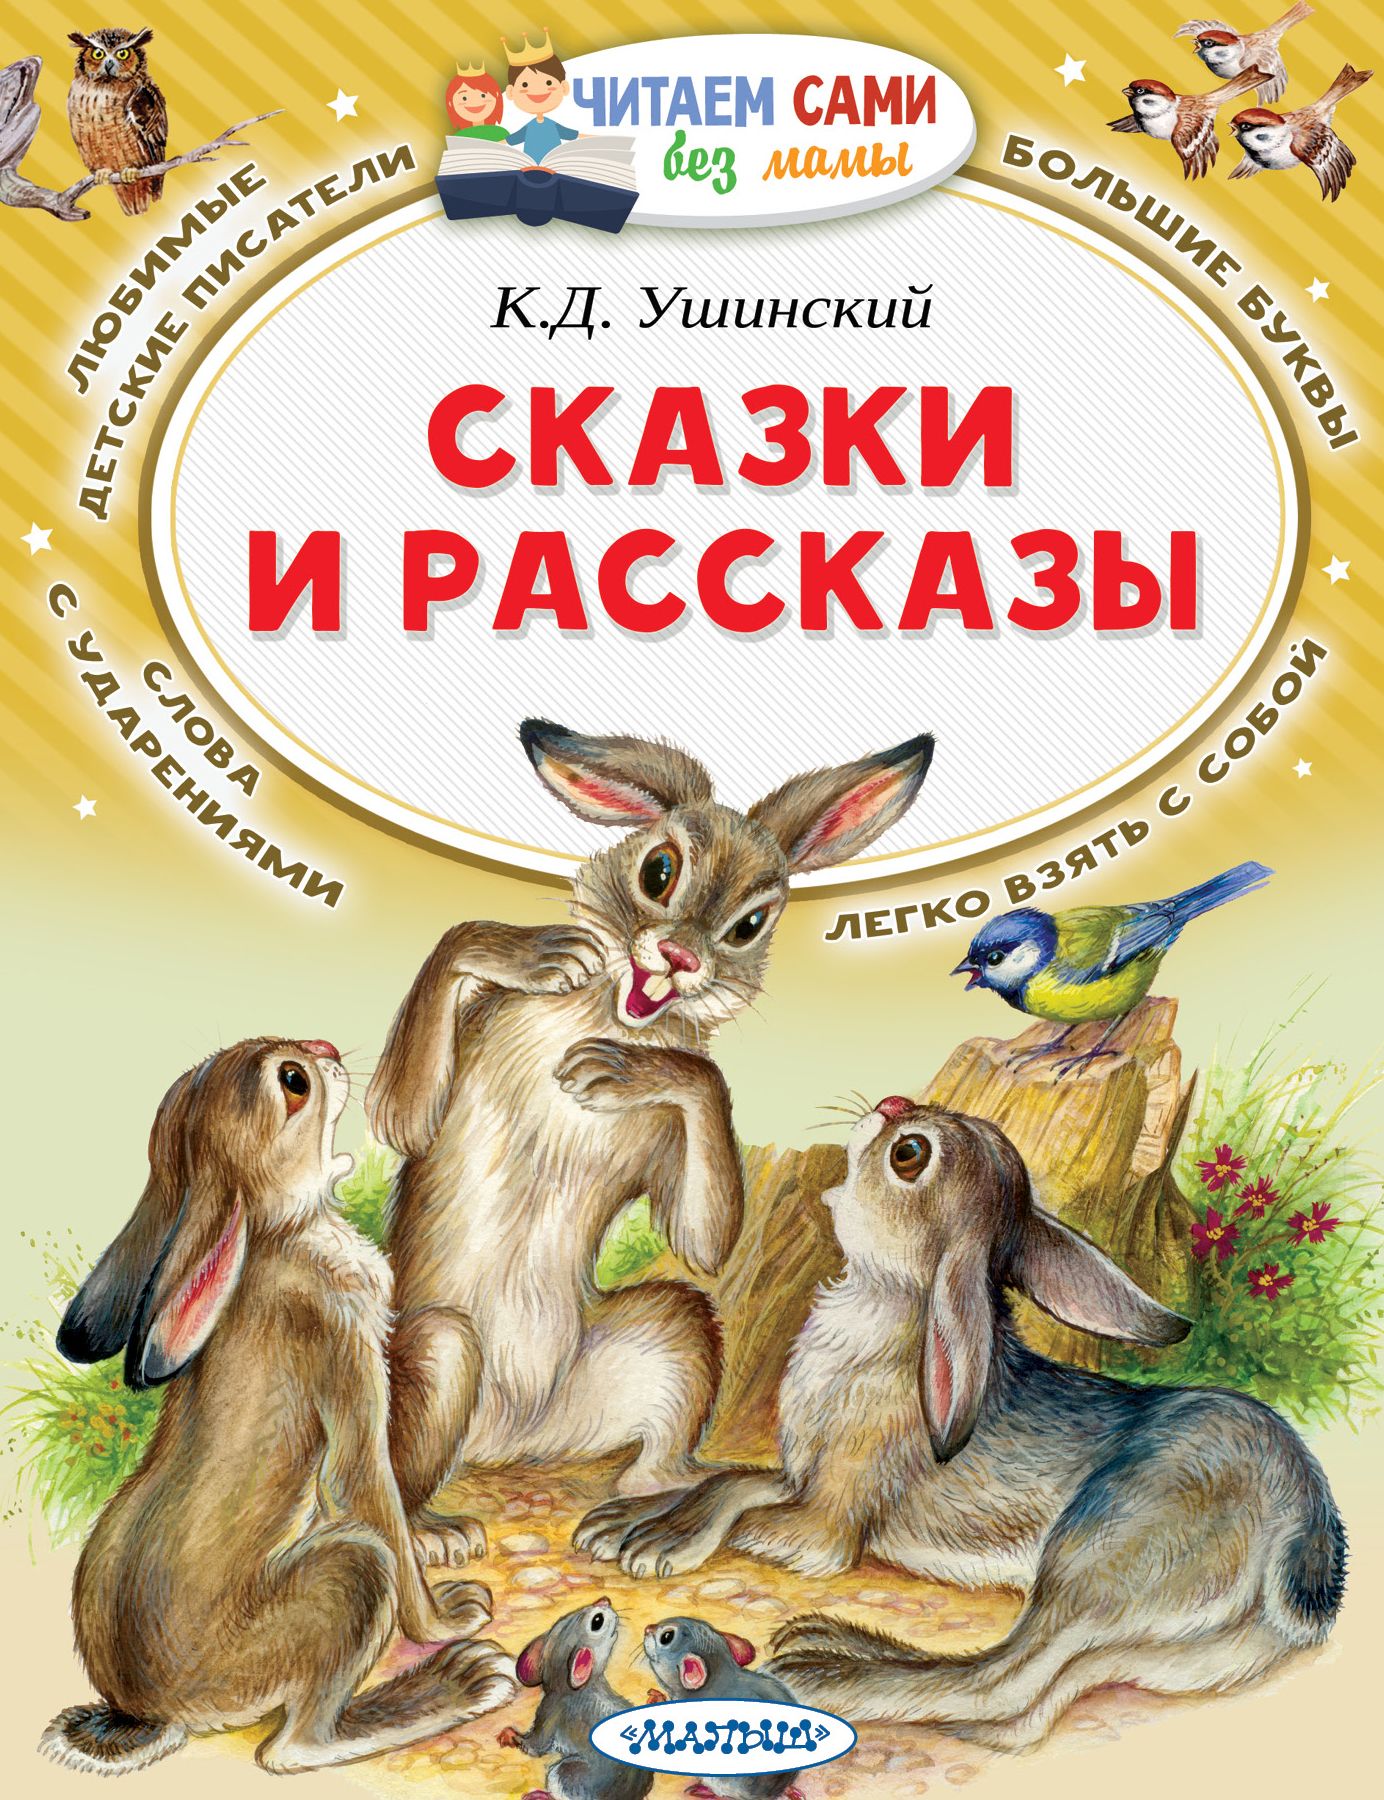 Произведения о детях книга. Ушинский, к.д. рассказы и сказки книга.